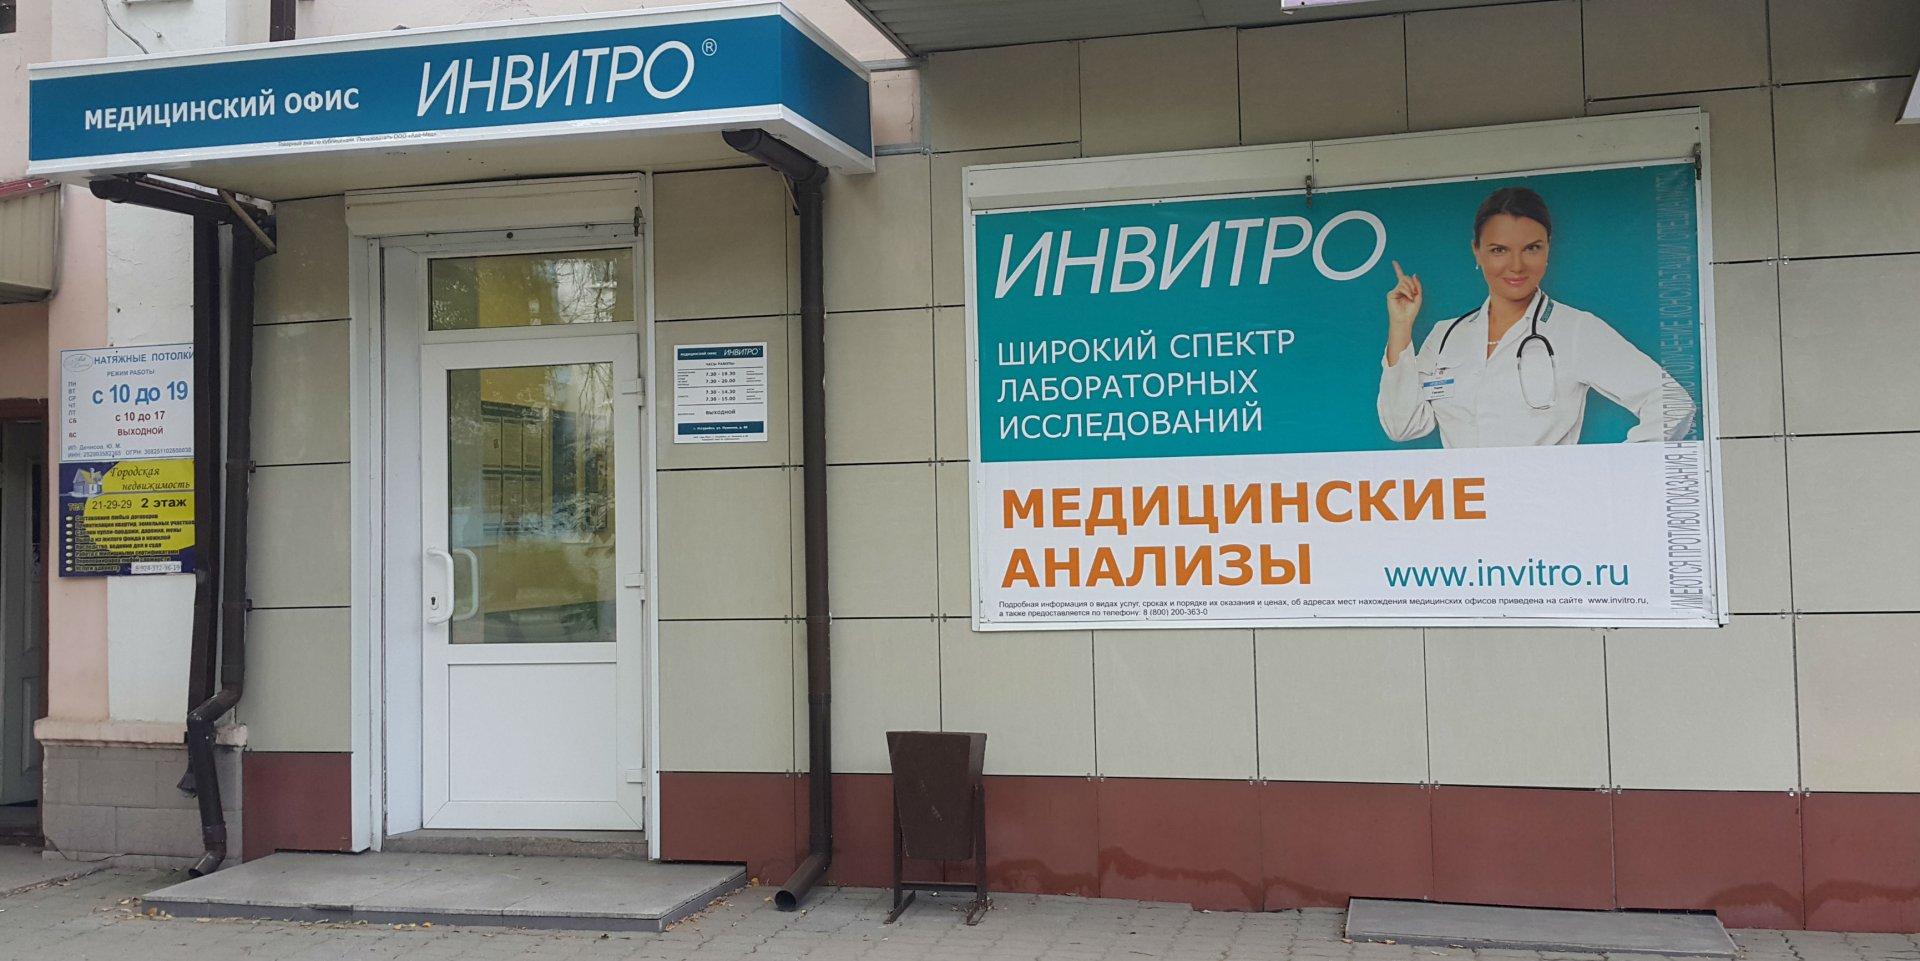 Где платная поликлиника. Инвитро медицинский центр. Медицинский офис инвитро. Инвитро клиника в Москве. Платная клиника инвитро.